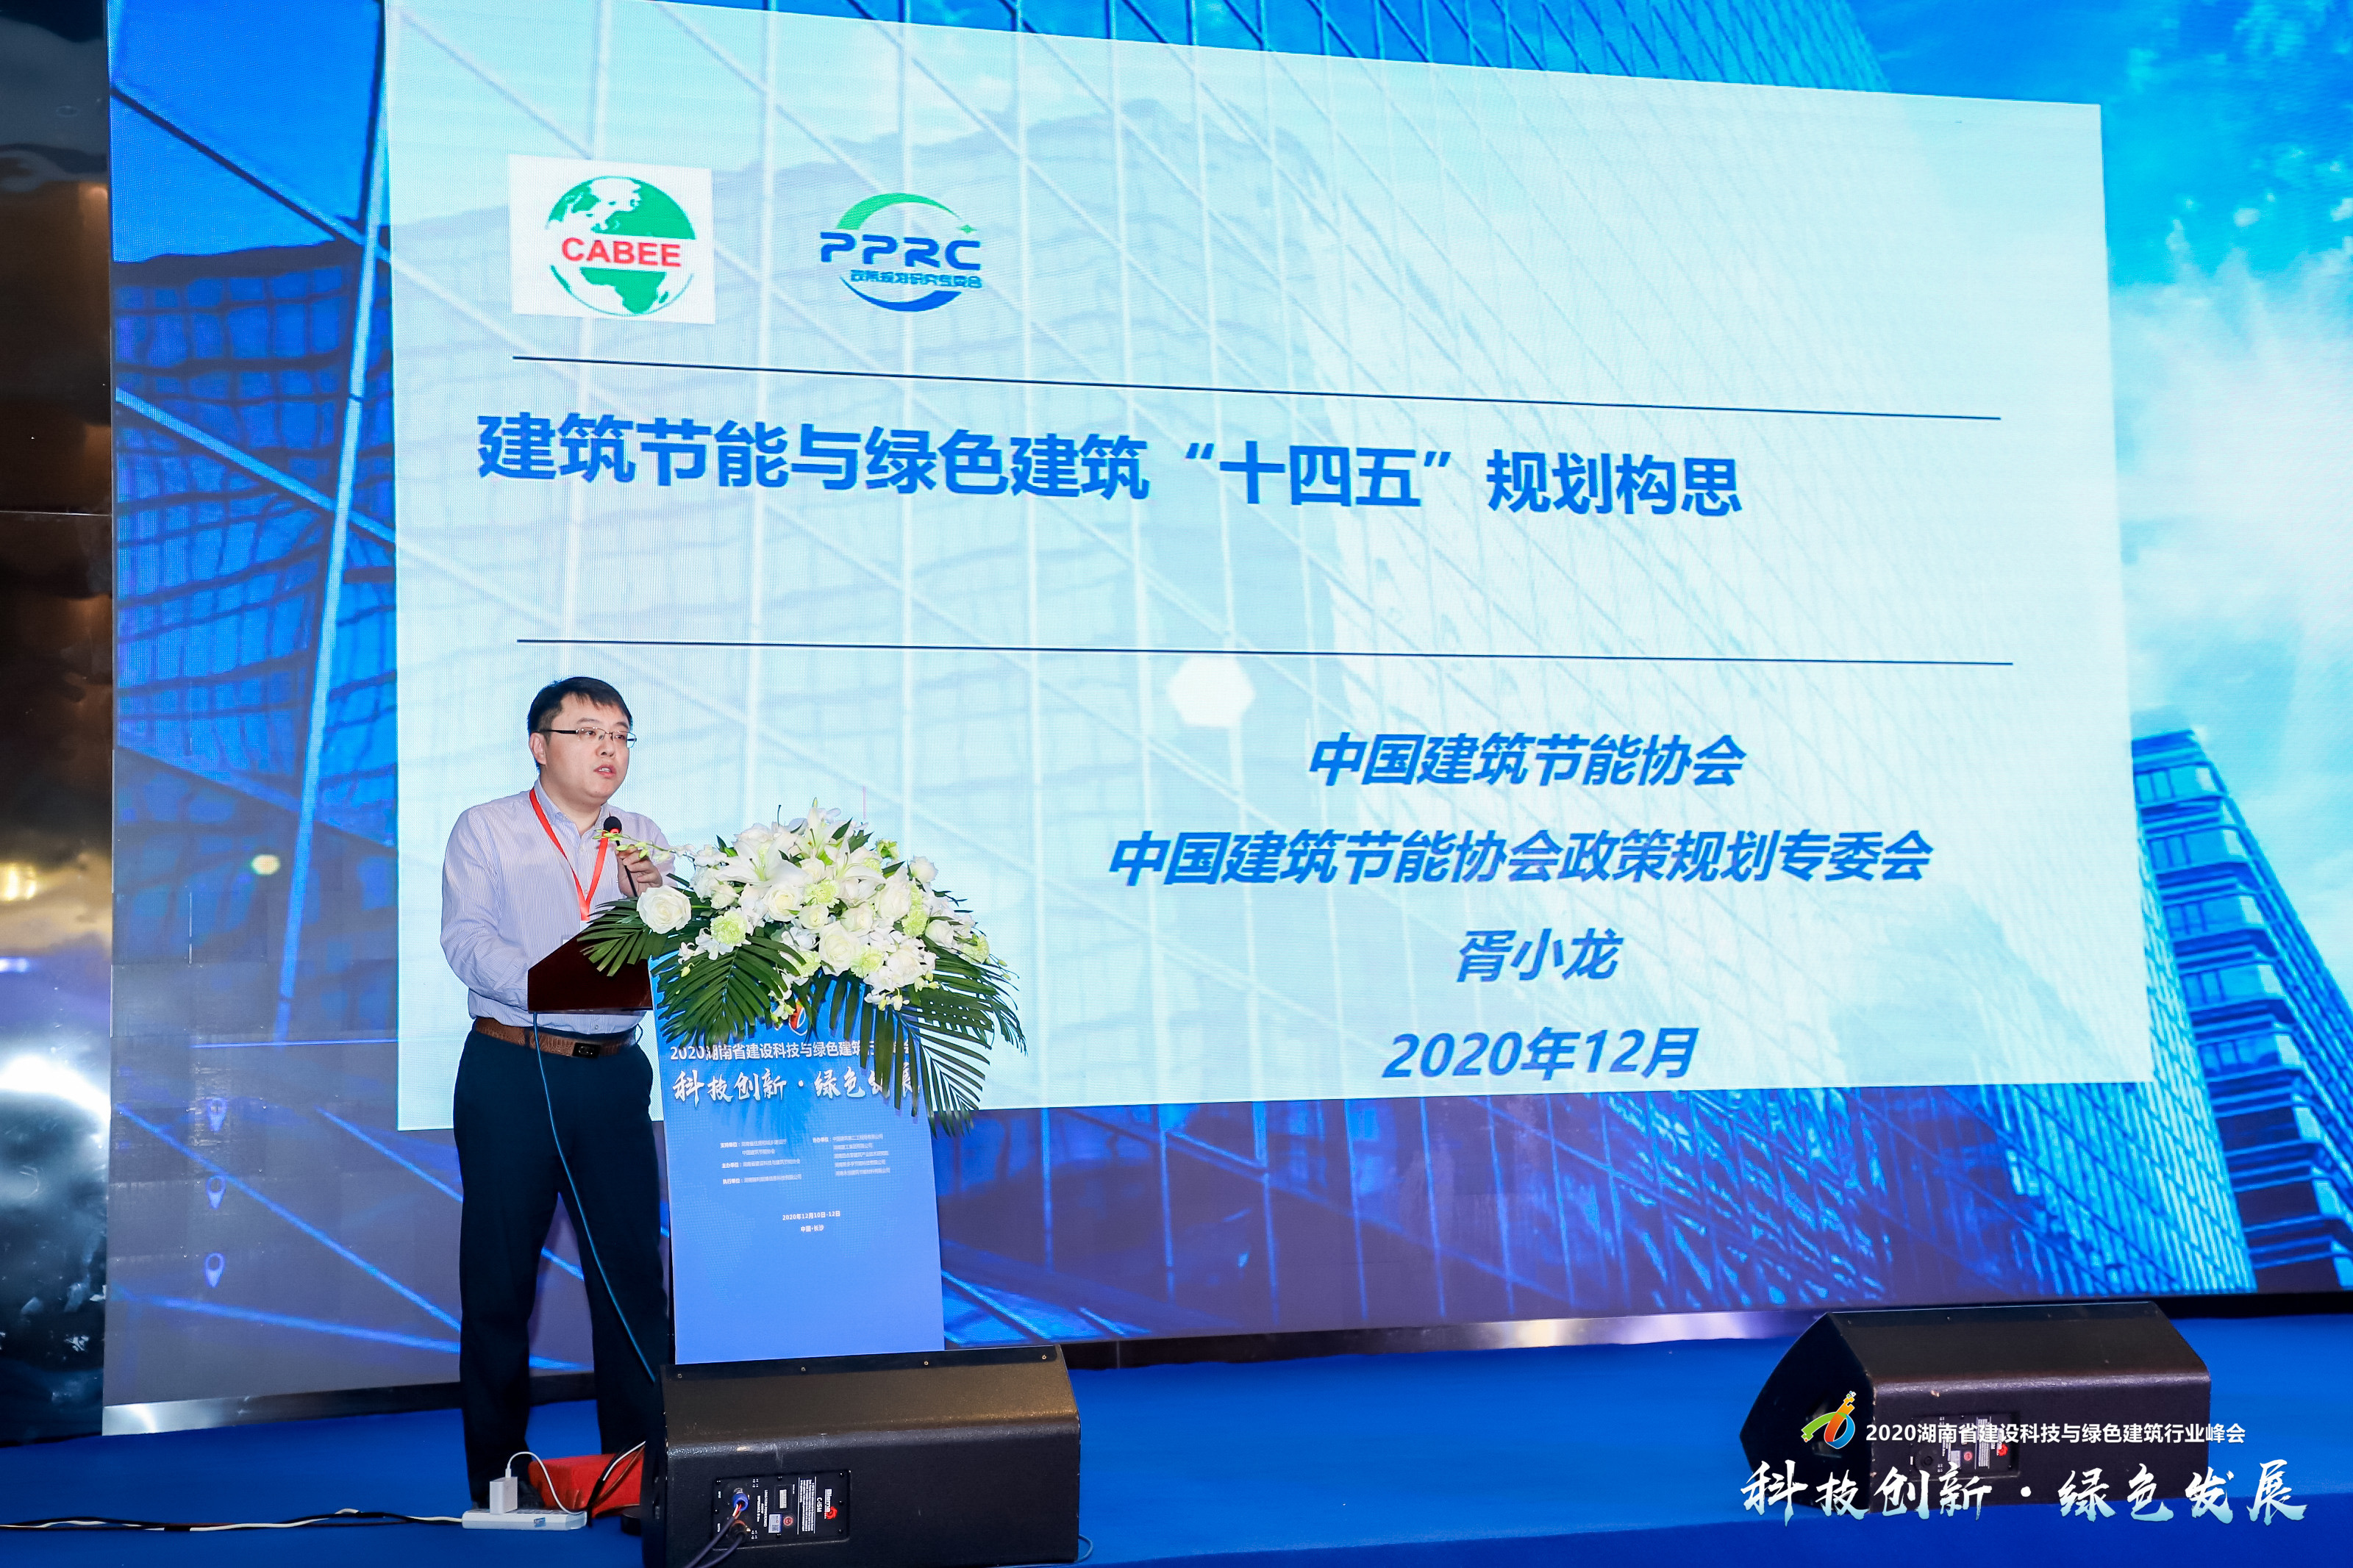 中国建筑节能协会副总工程师、政策规划专委会主任胥小龙发表主题演讲。